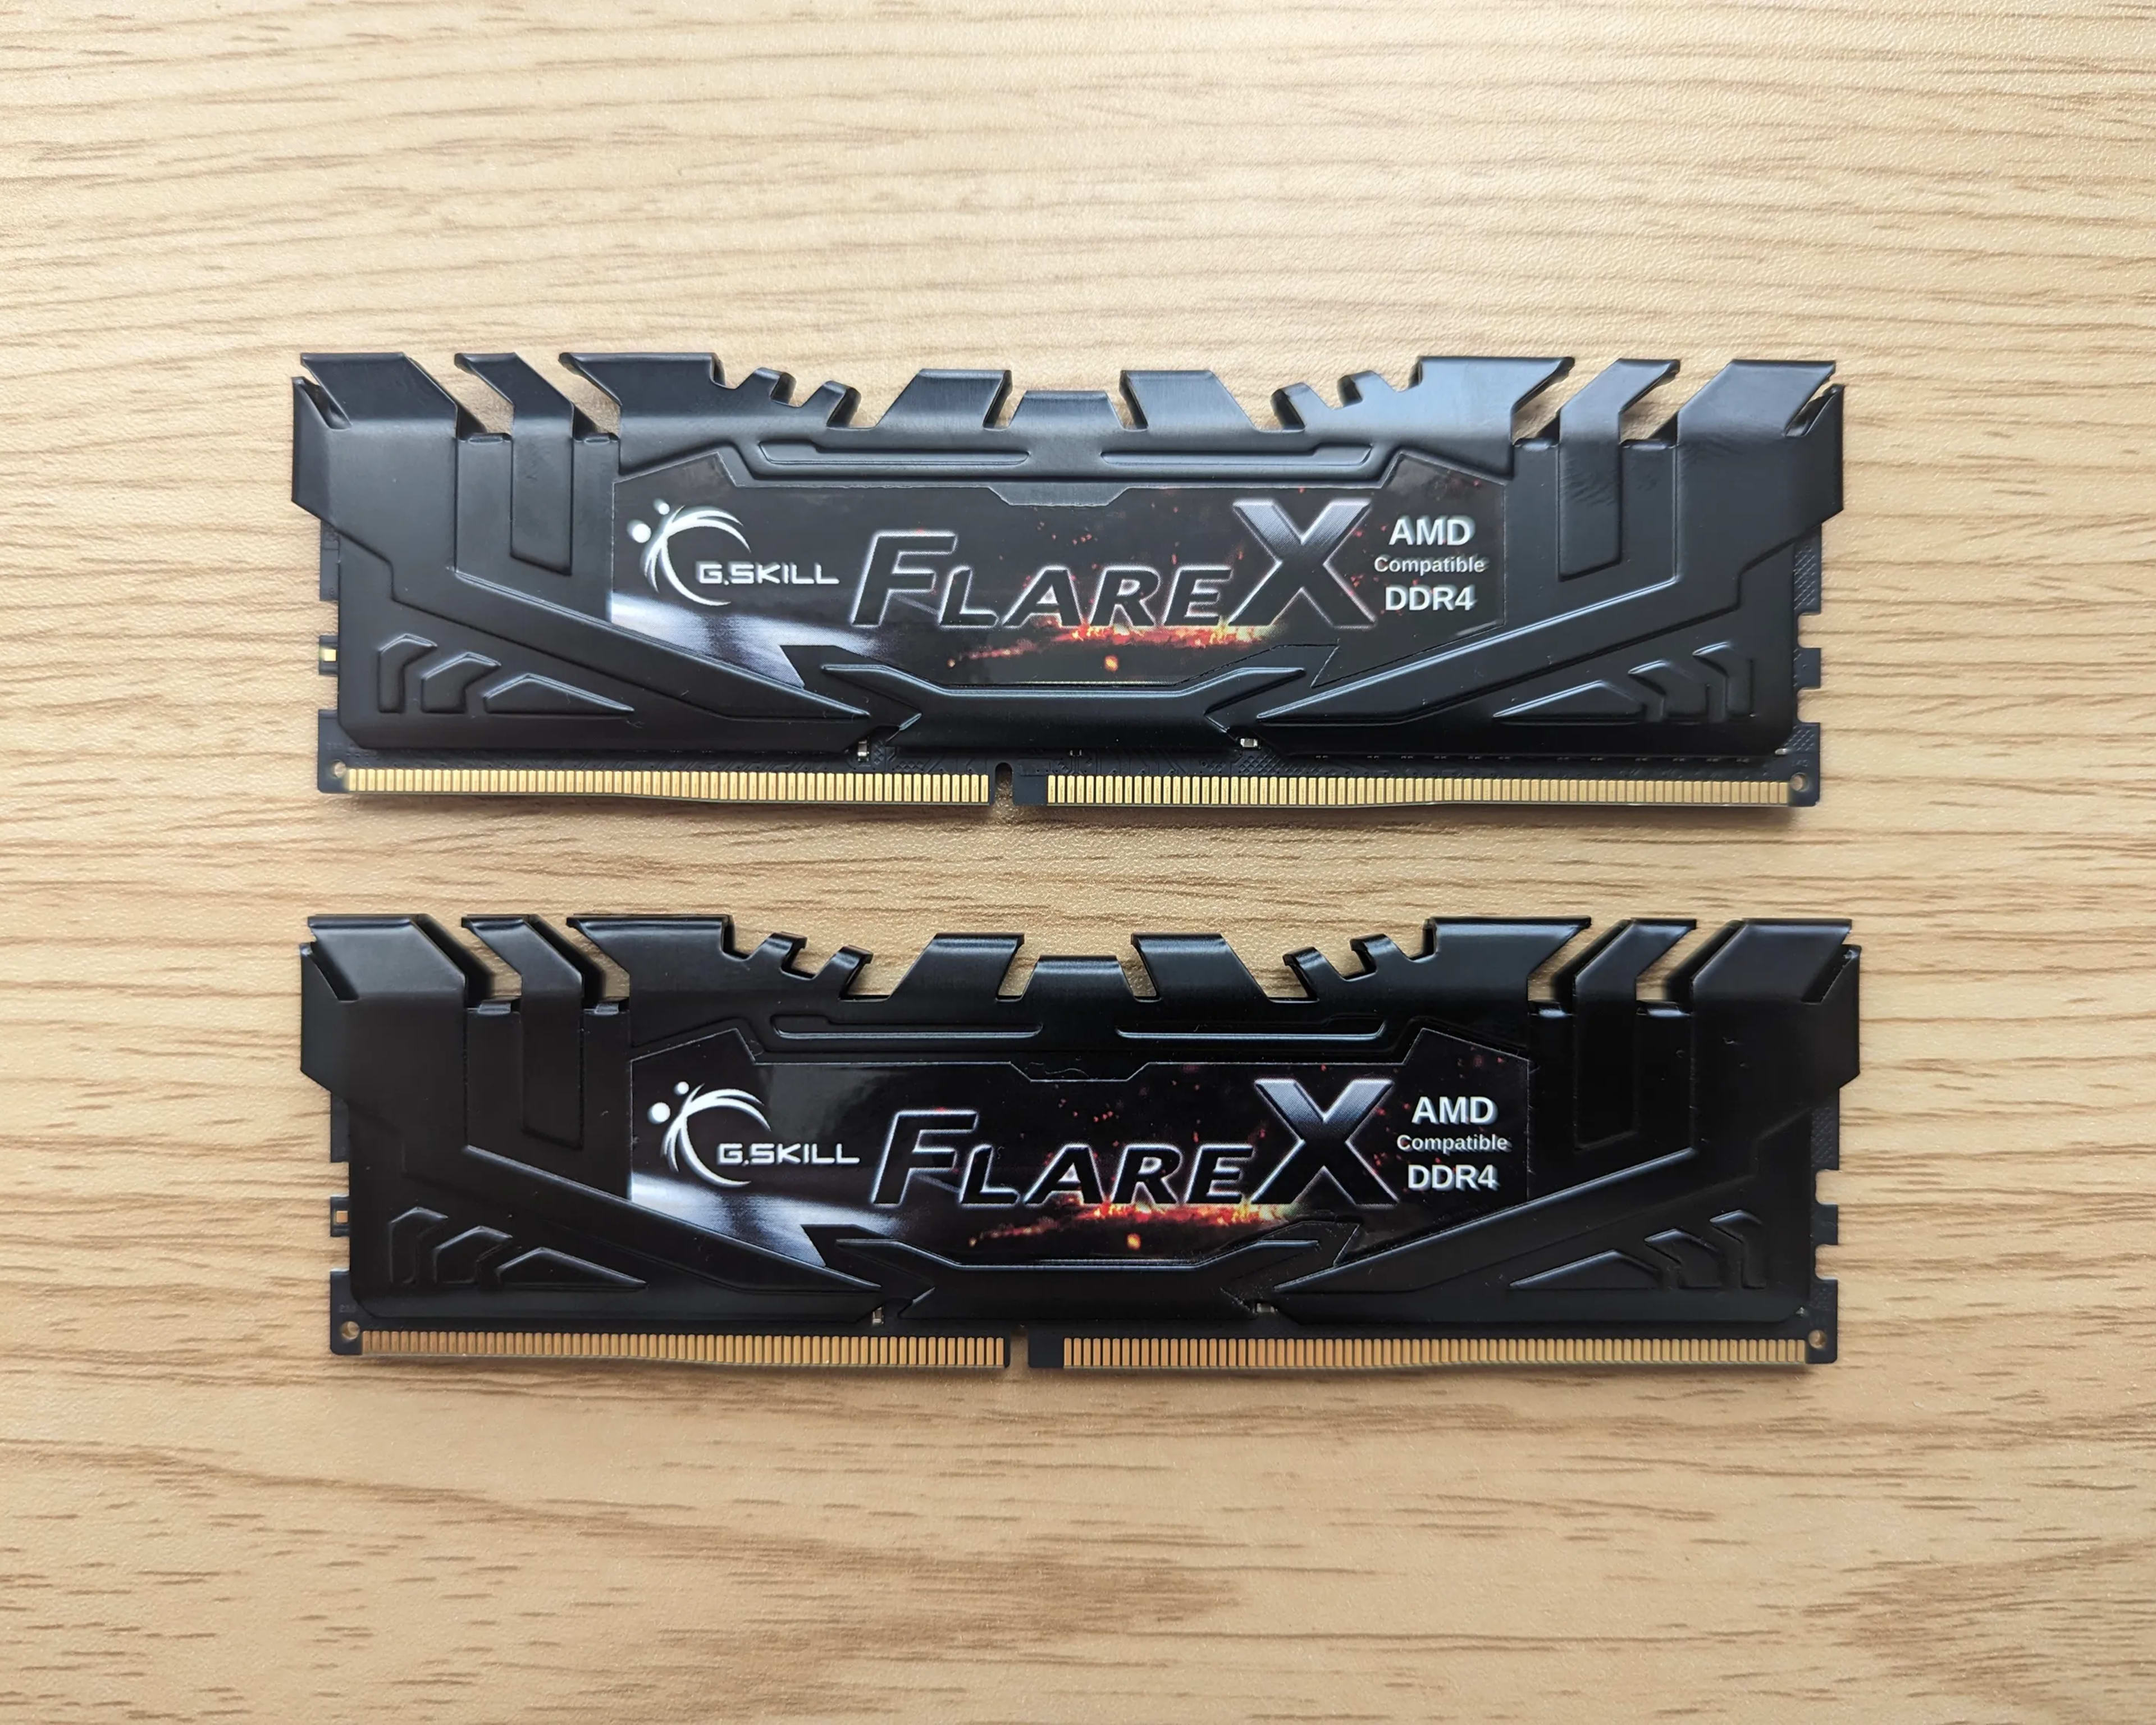 G.Skill Flare X 16GB (2 x 8GB) DDR4 3200 RAM (PC4 25600) F4-3200C16D-16GFX